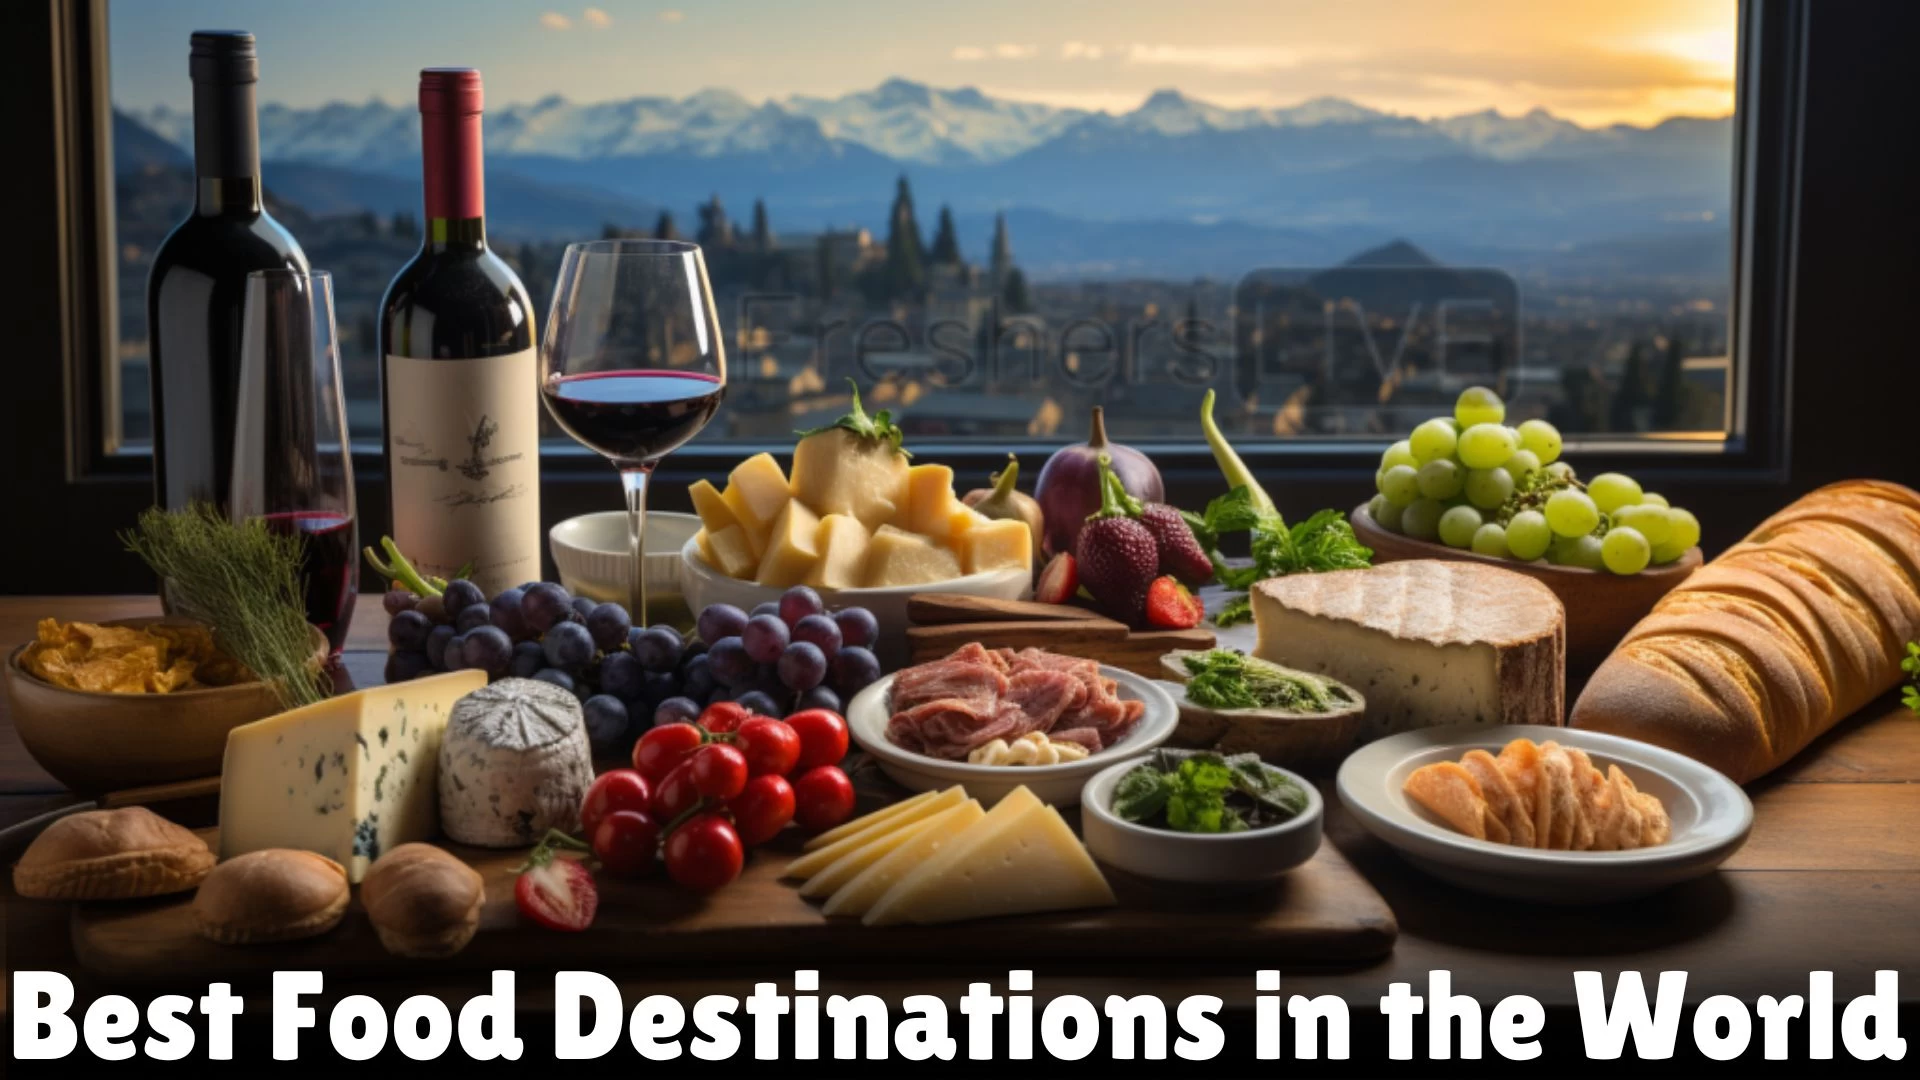 Best Food Destinations in the World - Top 10 Epicurean Adventures